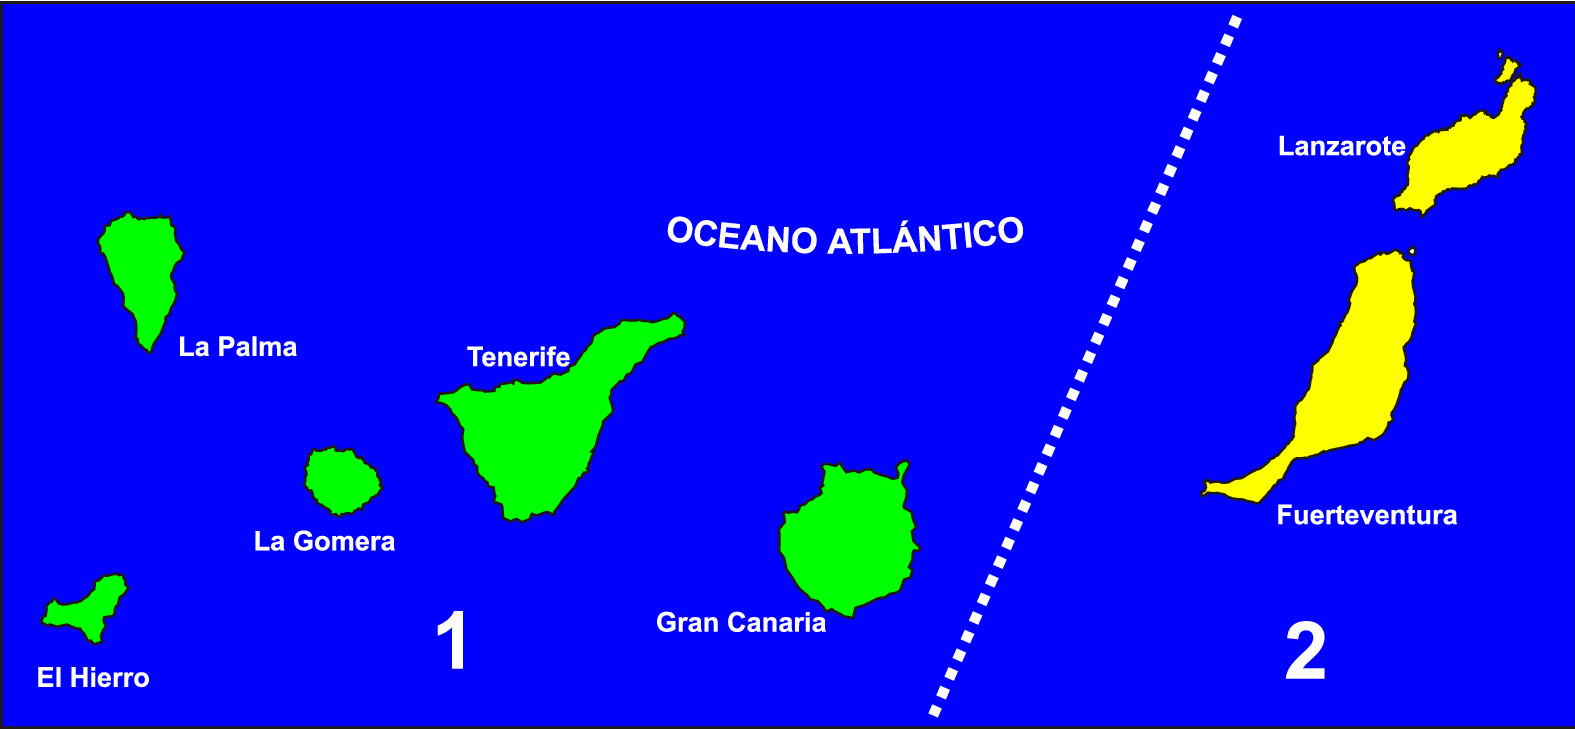 1. Subprovincia Canaria